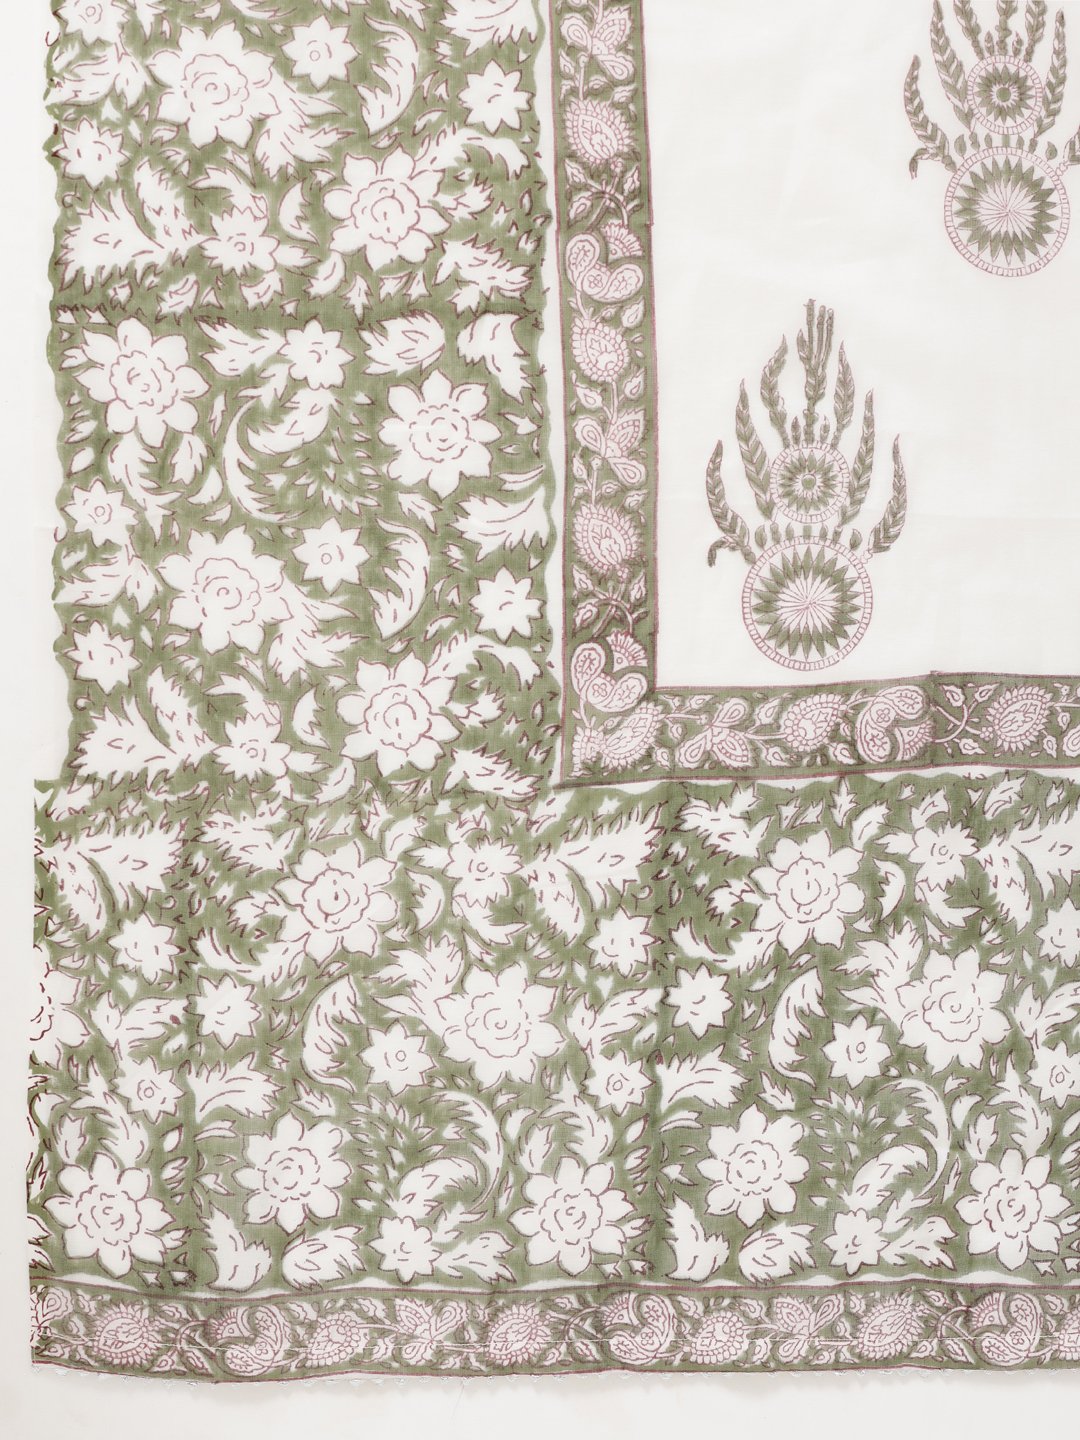 Women's Printed Green Cotton Kurta and Palazzo set by Kipek- (3pcs set)